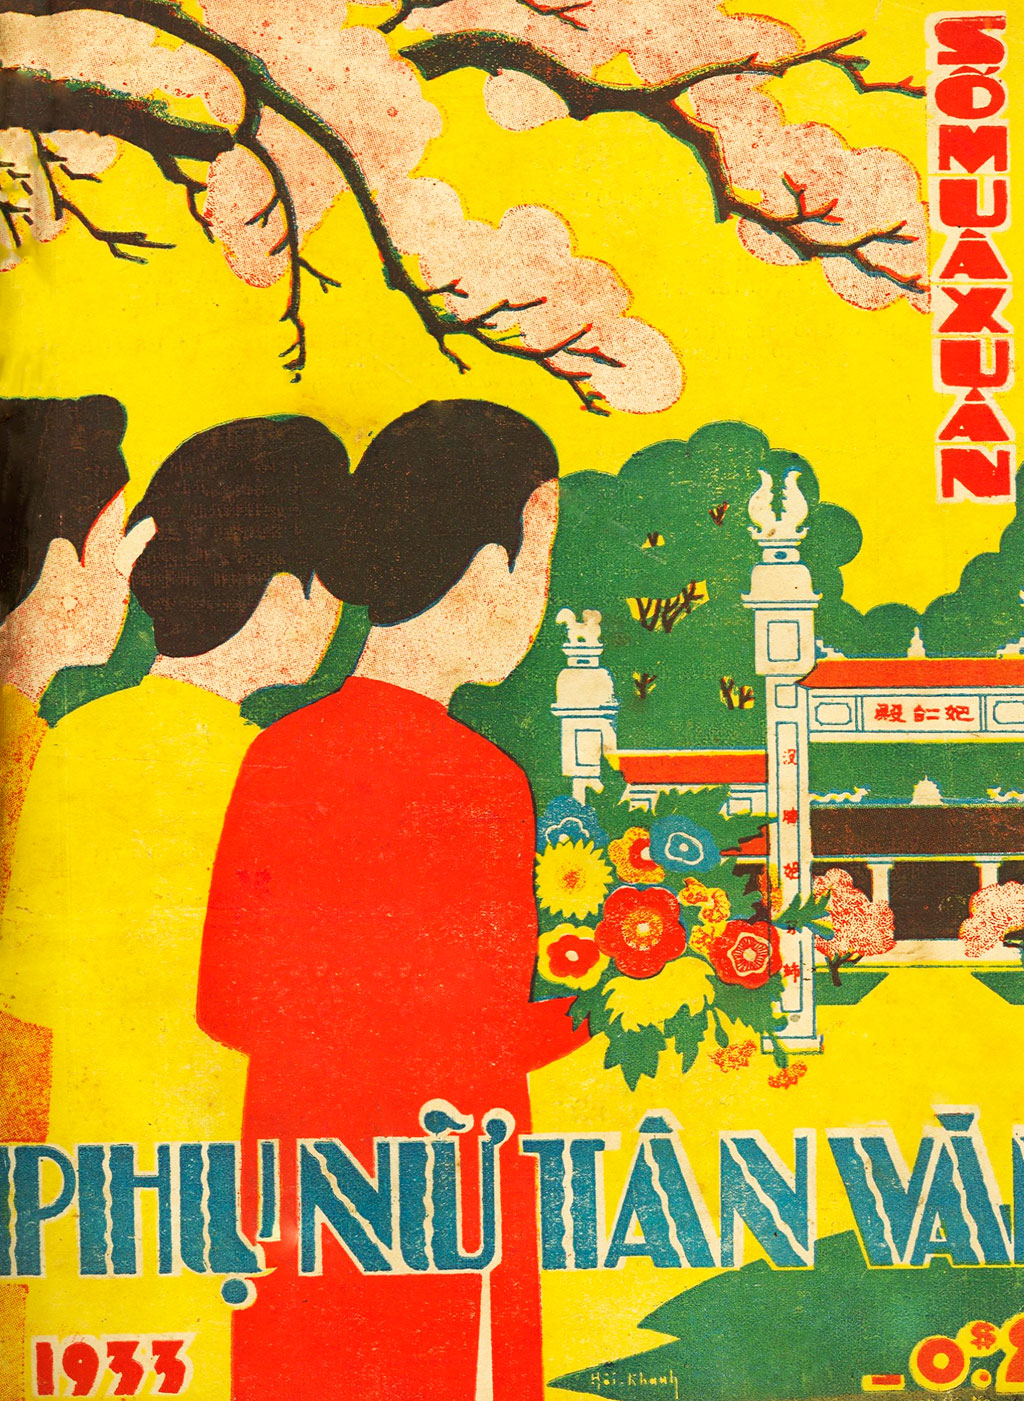 Phong vị báo xuân xưa: Phụ Nữ Tân Văn và cuộc thi bìa báo xuân năm 1933 2